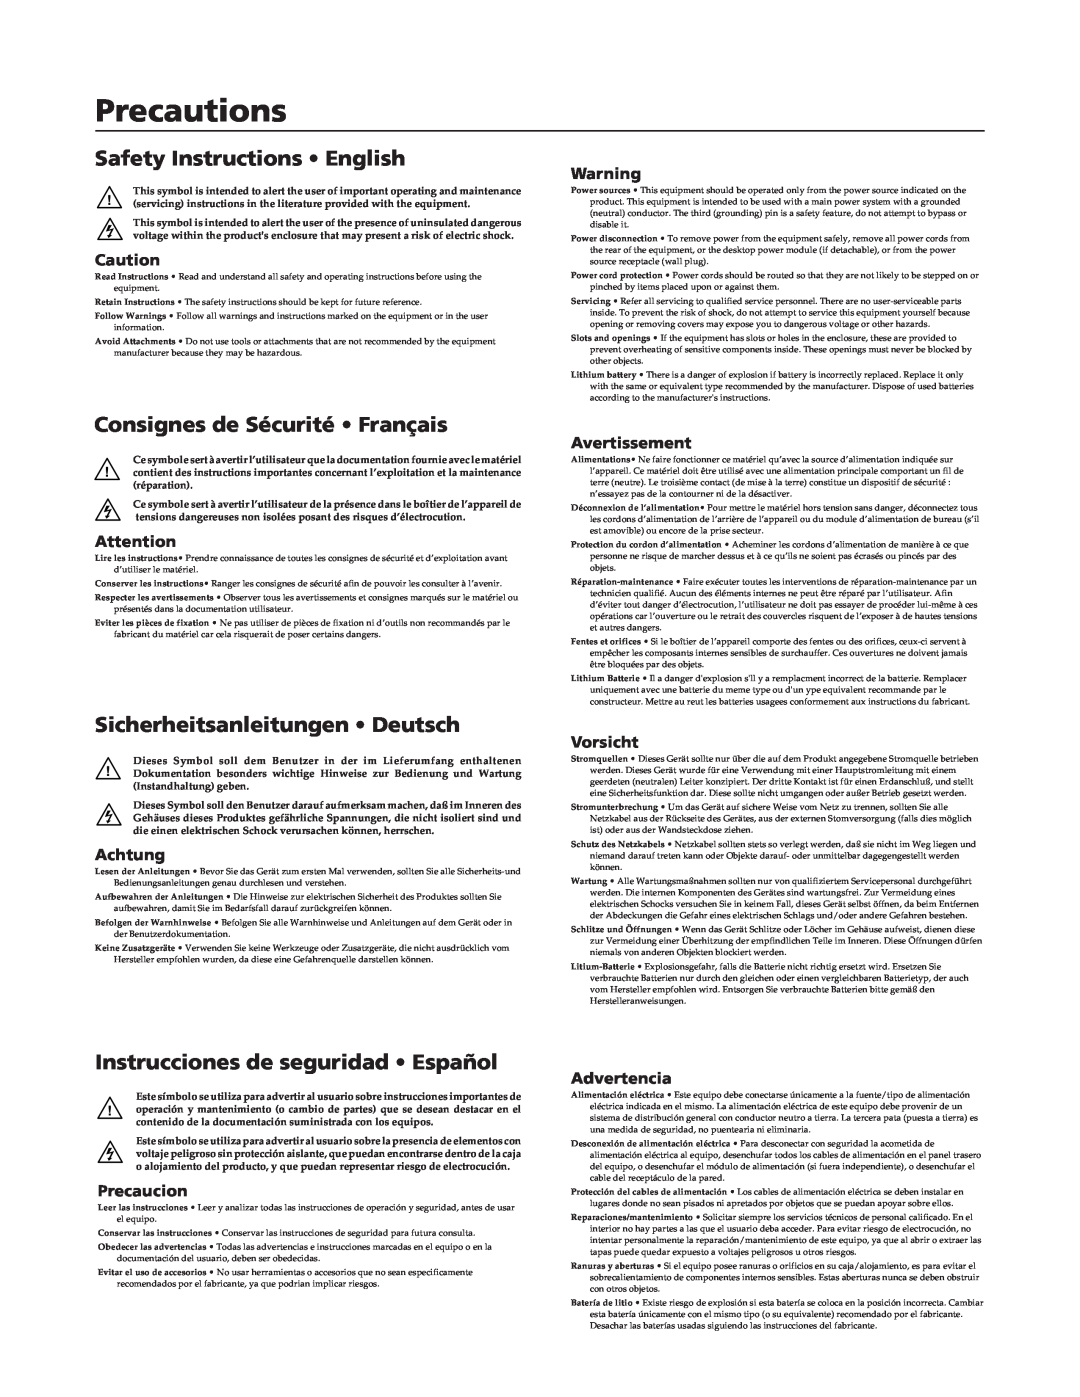 Extron electronic CrossPoint 84 manual Precautions, Safety Instructions English, Consignes de Sécurité Français, Achtung 